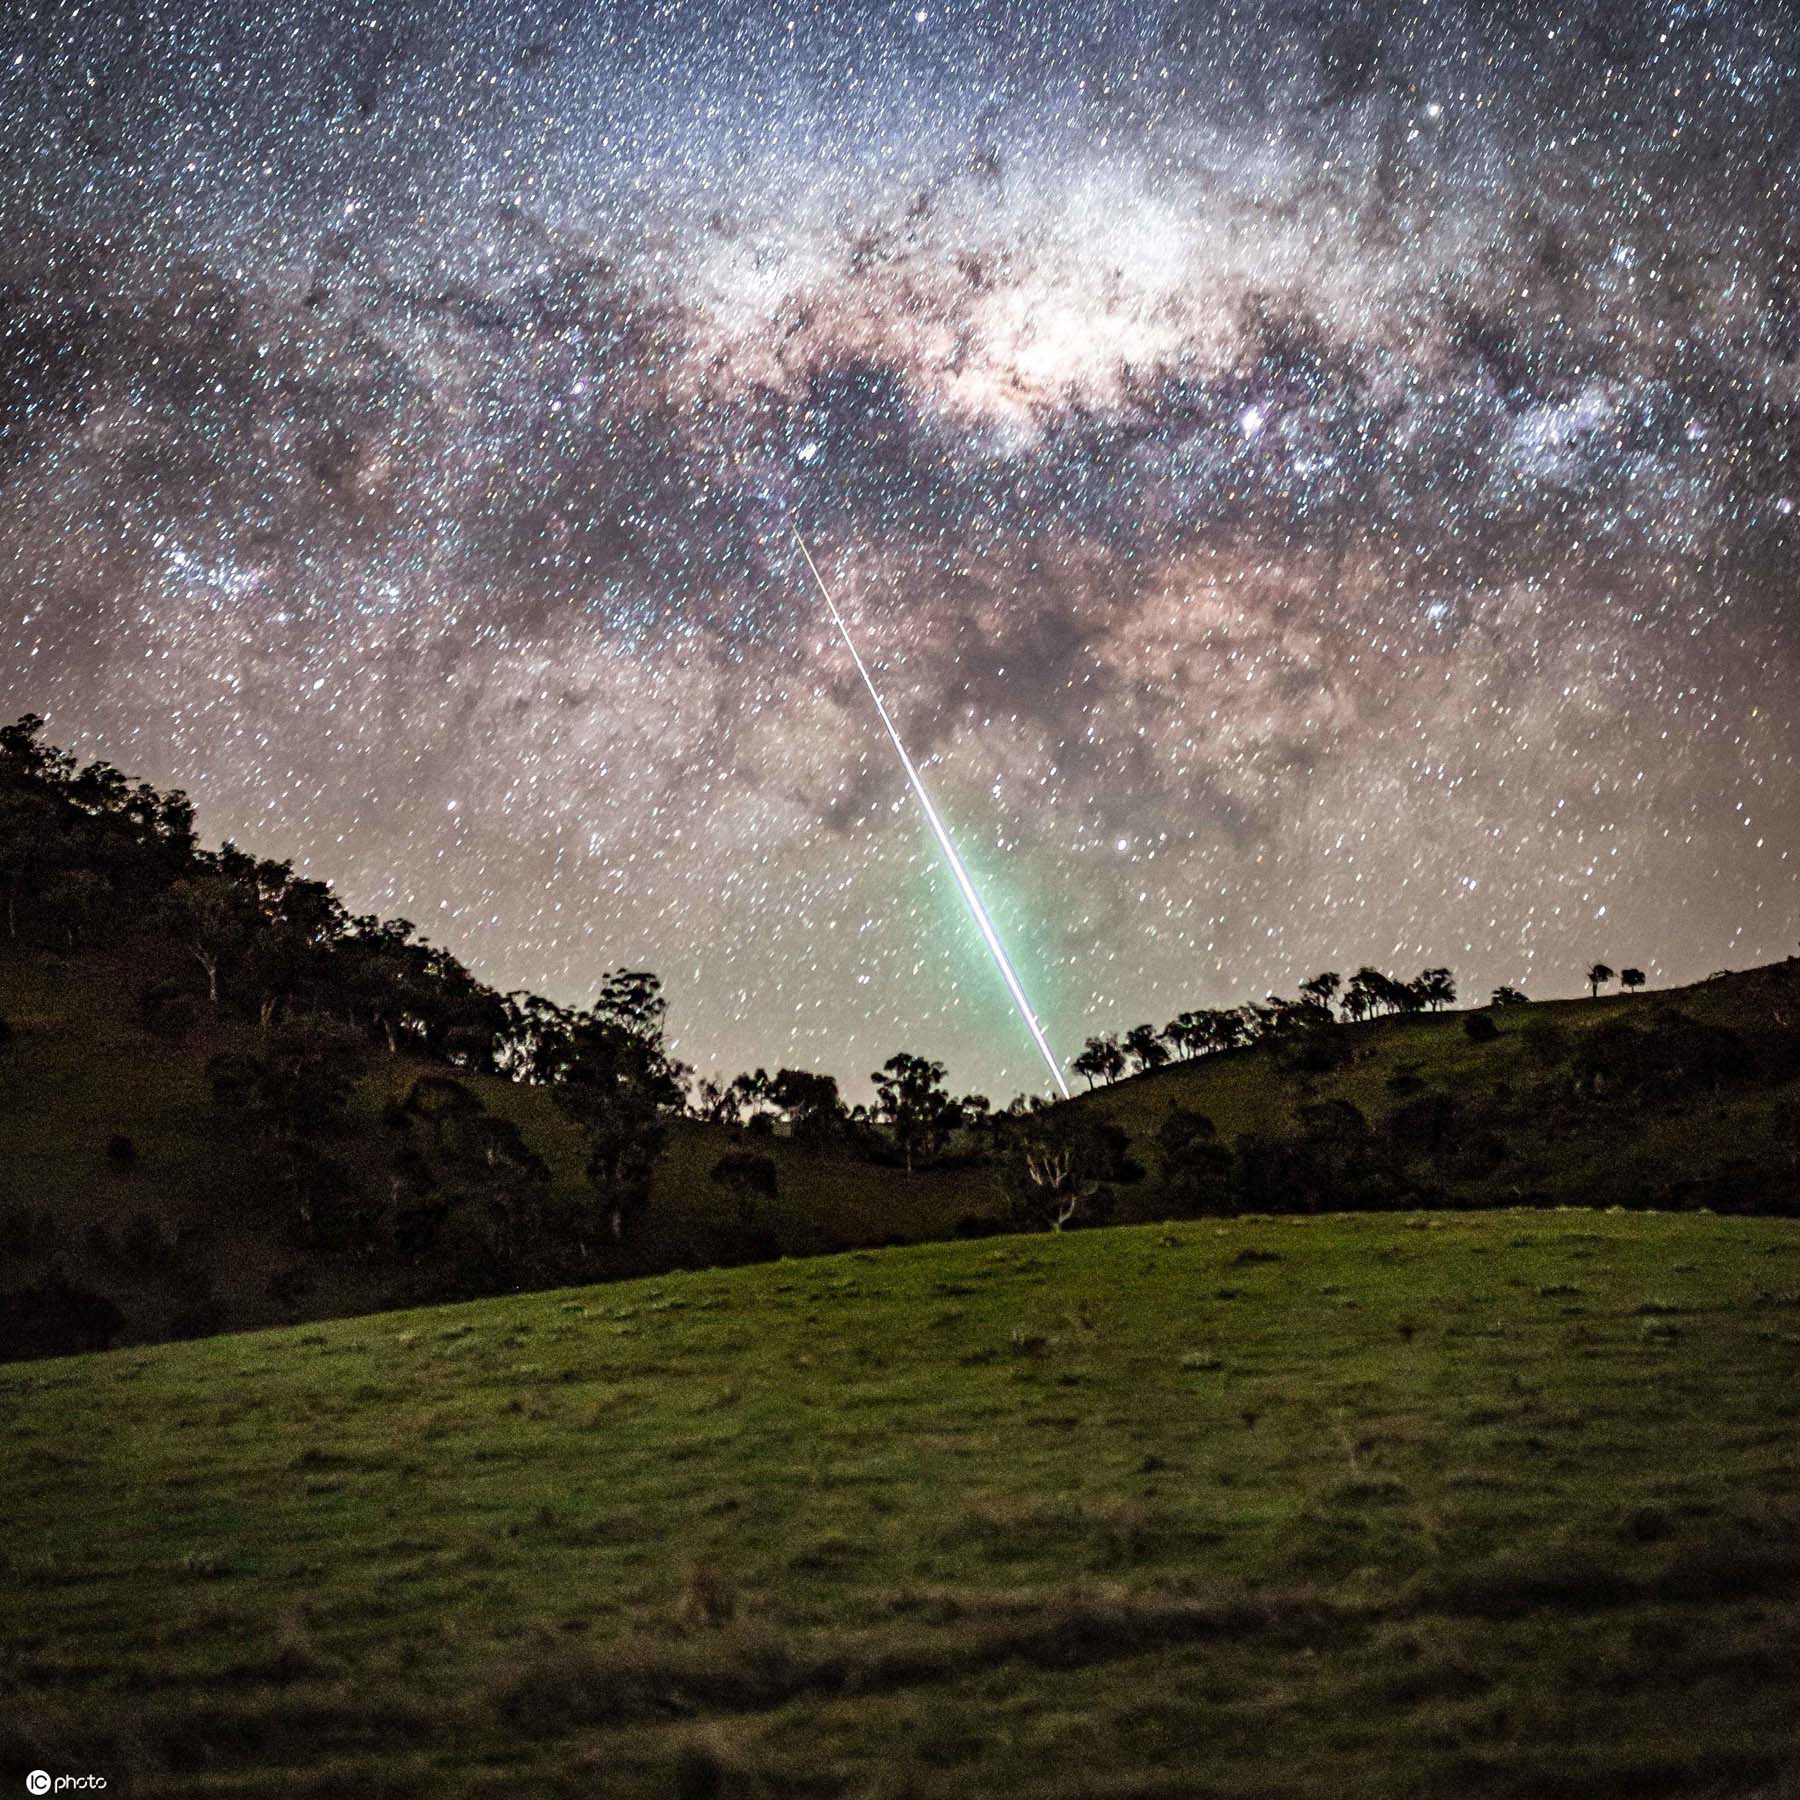 澳摄影师捕捉罕见流星爆炸夜空瞬间被点亮超震撼!